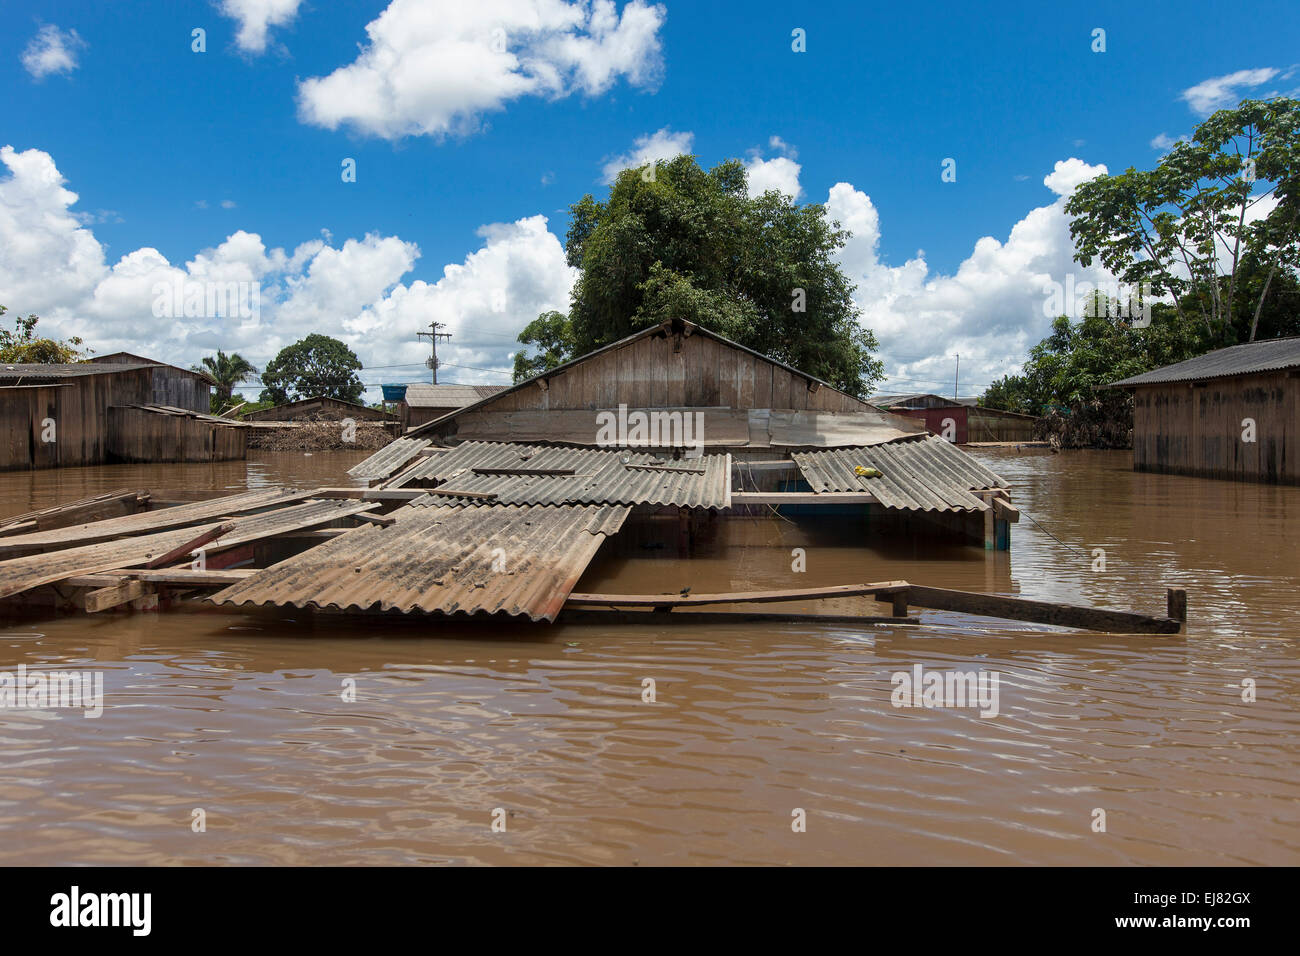 2015 Inondazioni in Amazzonia brasiliana, inondato casa nel distretto di Taquari, Rio Branco città, Acre. Le inondazioni sono state che colpisce migliaia di persone in stato di Acre, nel nord del Brasile, dal 23 febbraio 2015, quando alcuni dei suoi fiumi, in particolare il fiume acri, in overflow. Ulteriori pioggia pesante ha costretto i livelli del fiume ancora maggiore, e il 03 marzo 2015 Brasile del governo federale ha dichiarato lo stato di emergenza in stato di acri, dove alluvioni corrente situazione è stata descritta come la peggiore in 132 anni. Foto Stock